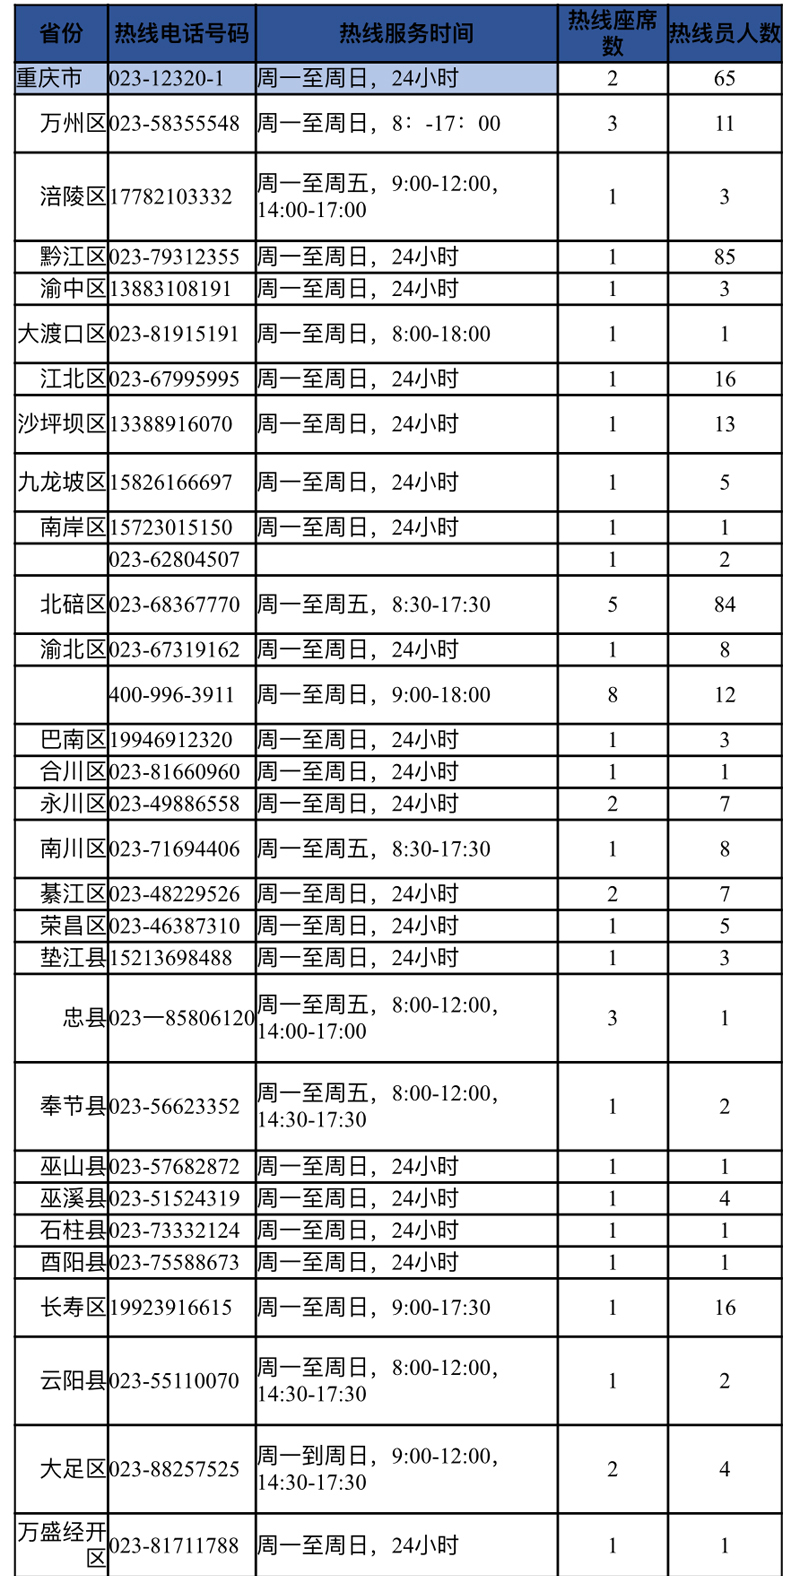 重庆开通31条专线 提供7×24小时心理支持和援助服务